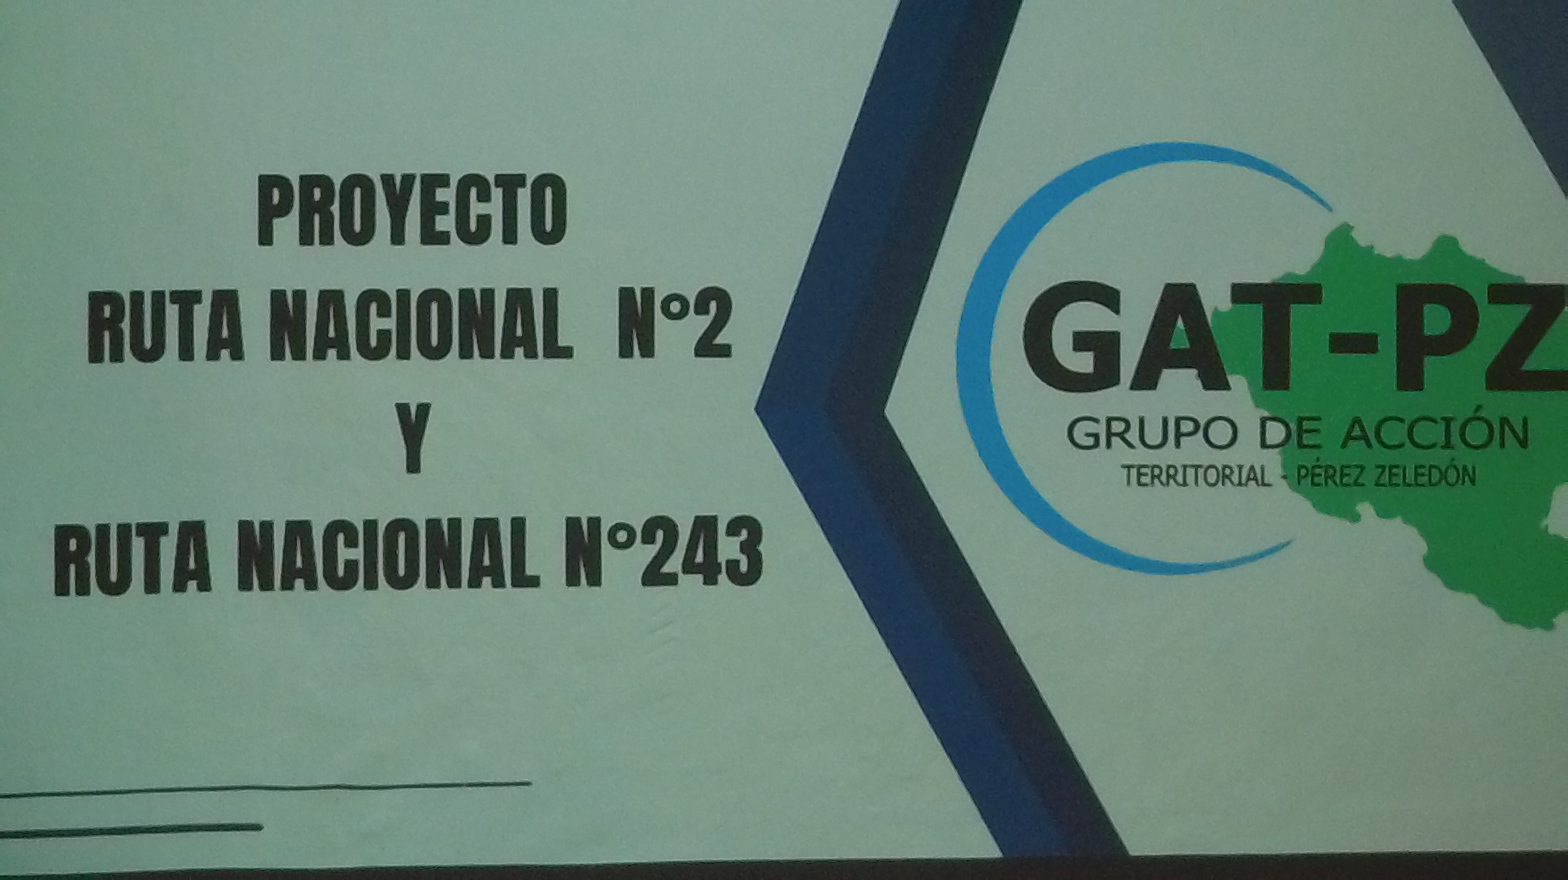 Avances Importantes: Reunión del Grupo de Acción Territorial de Pérez Zeledón (GAT) con los Diputados y la Alcaldía